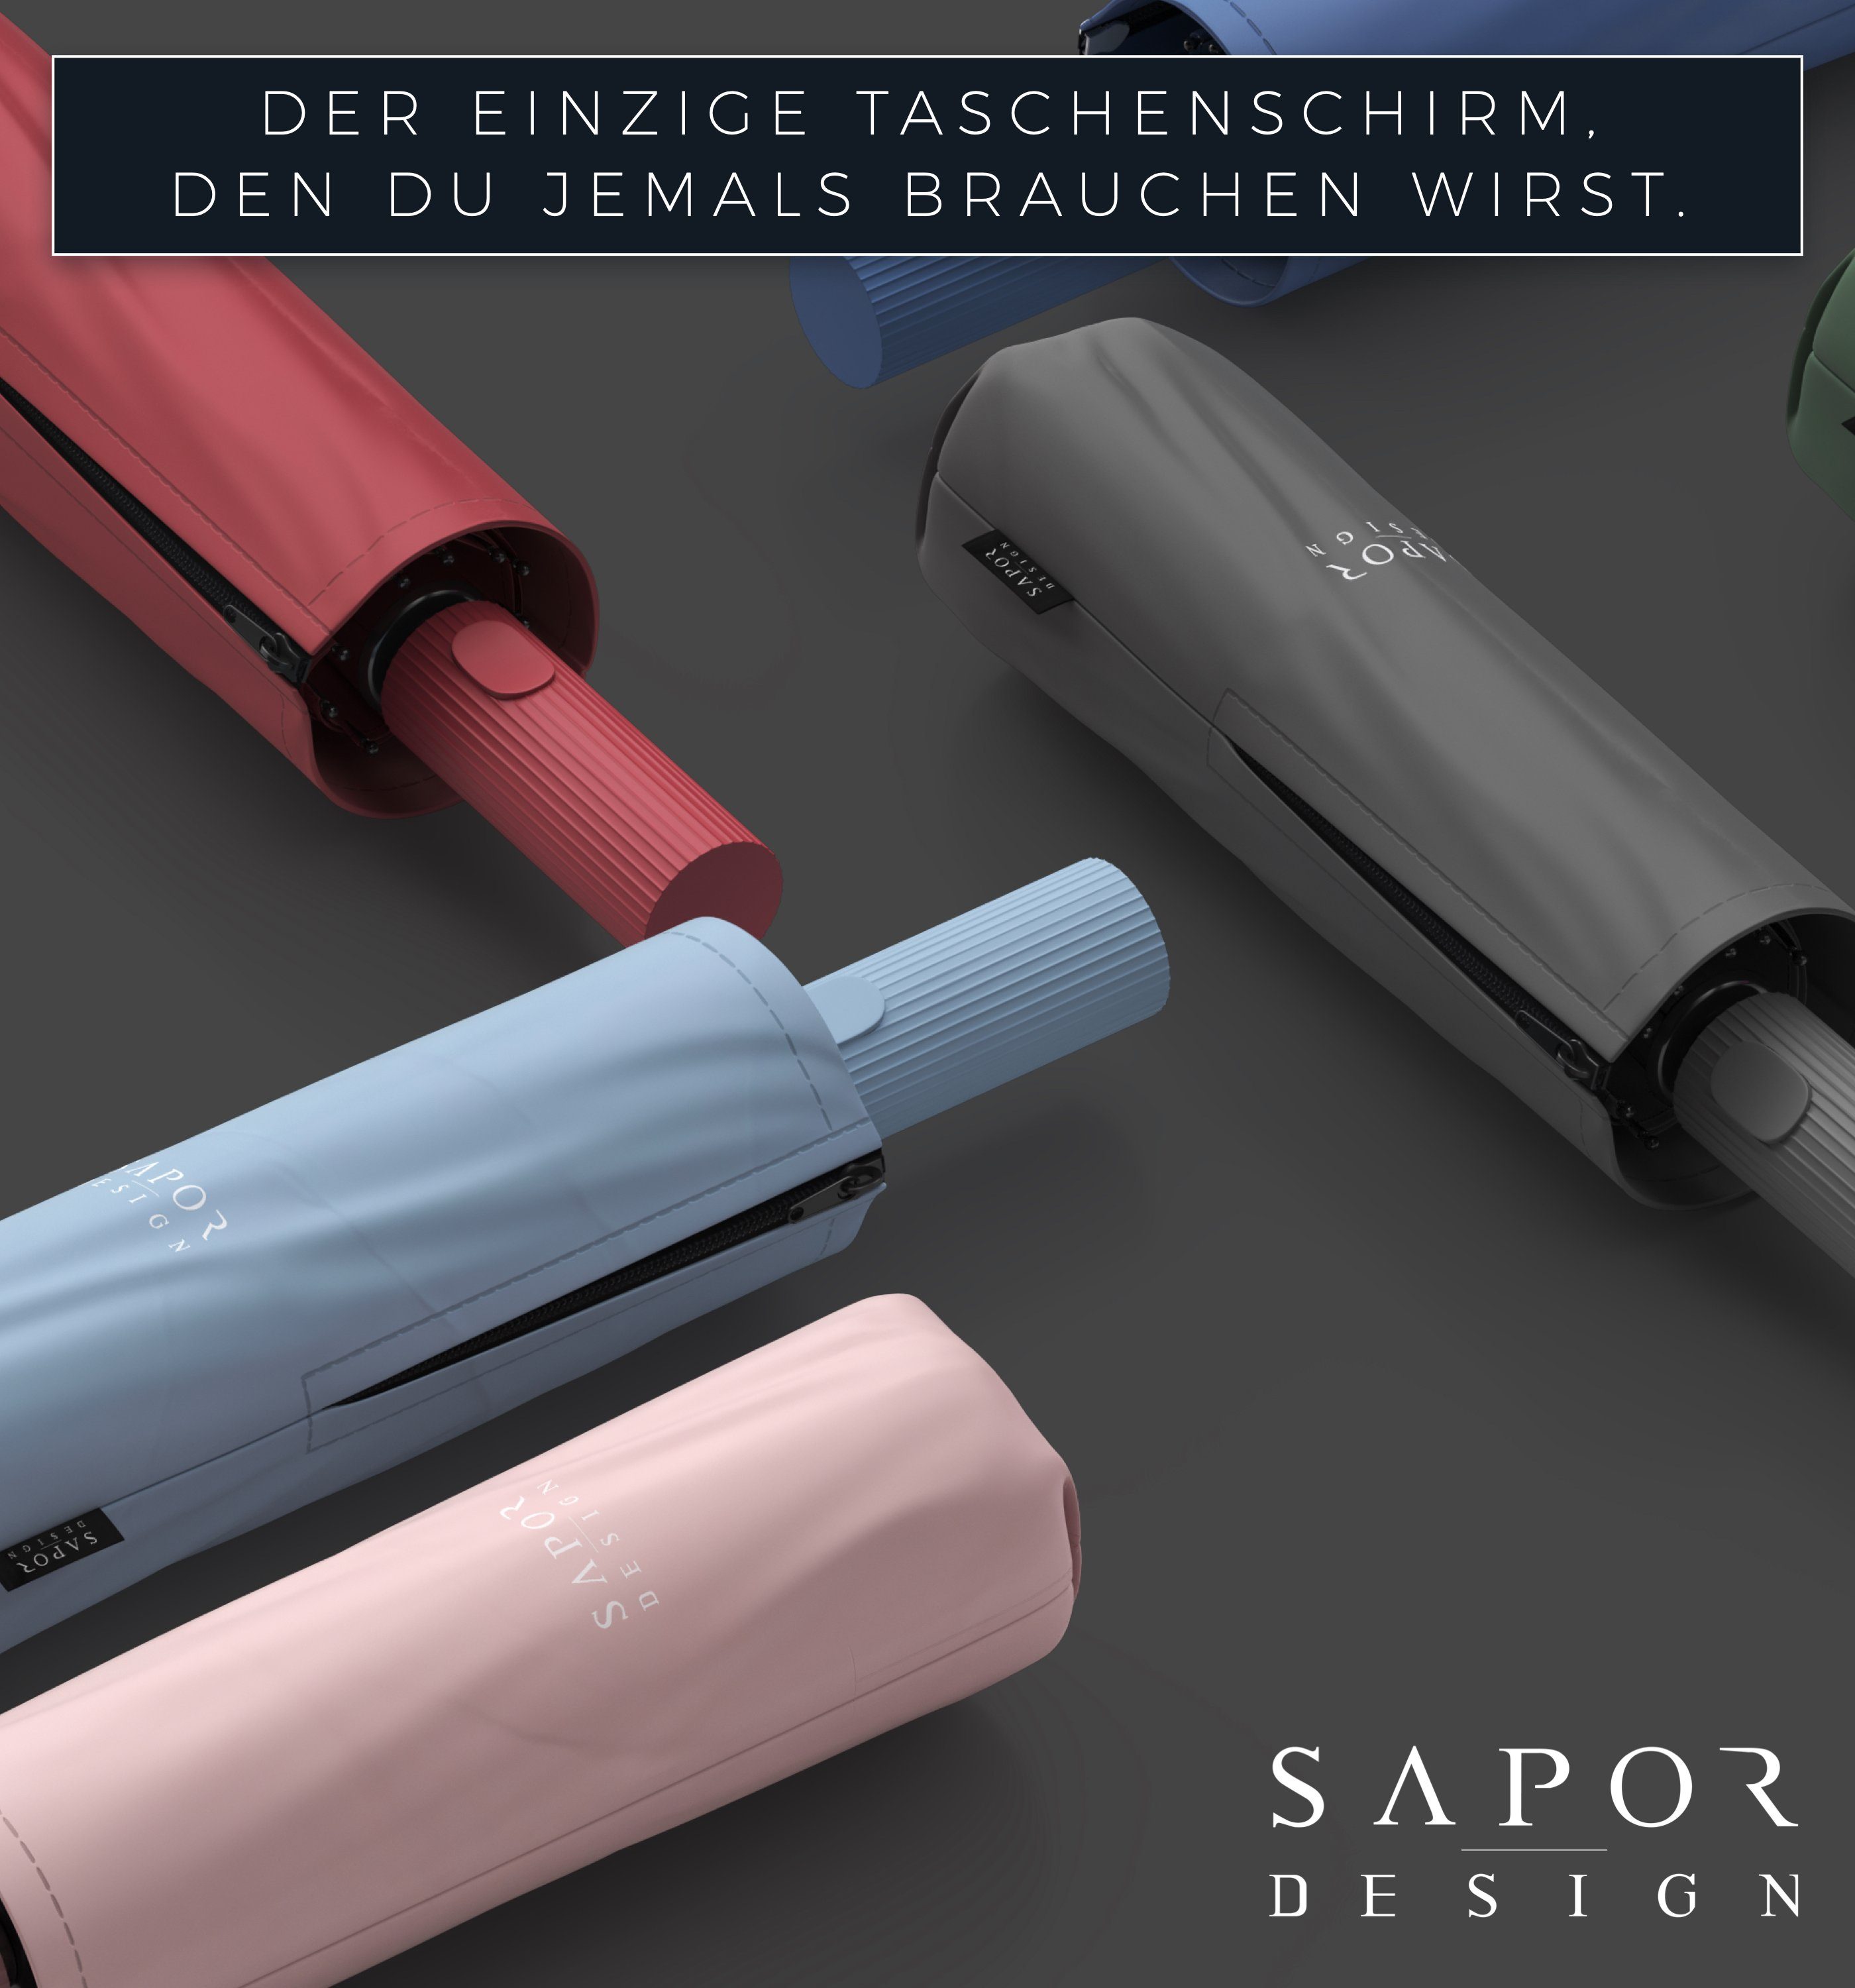 ICONIC Sapor Design Taschenschirm Taschenregenschirm Design Sapor Rosa